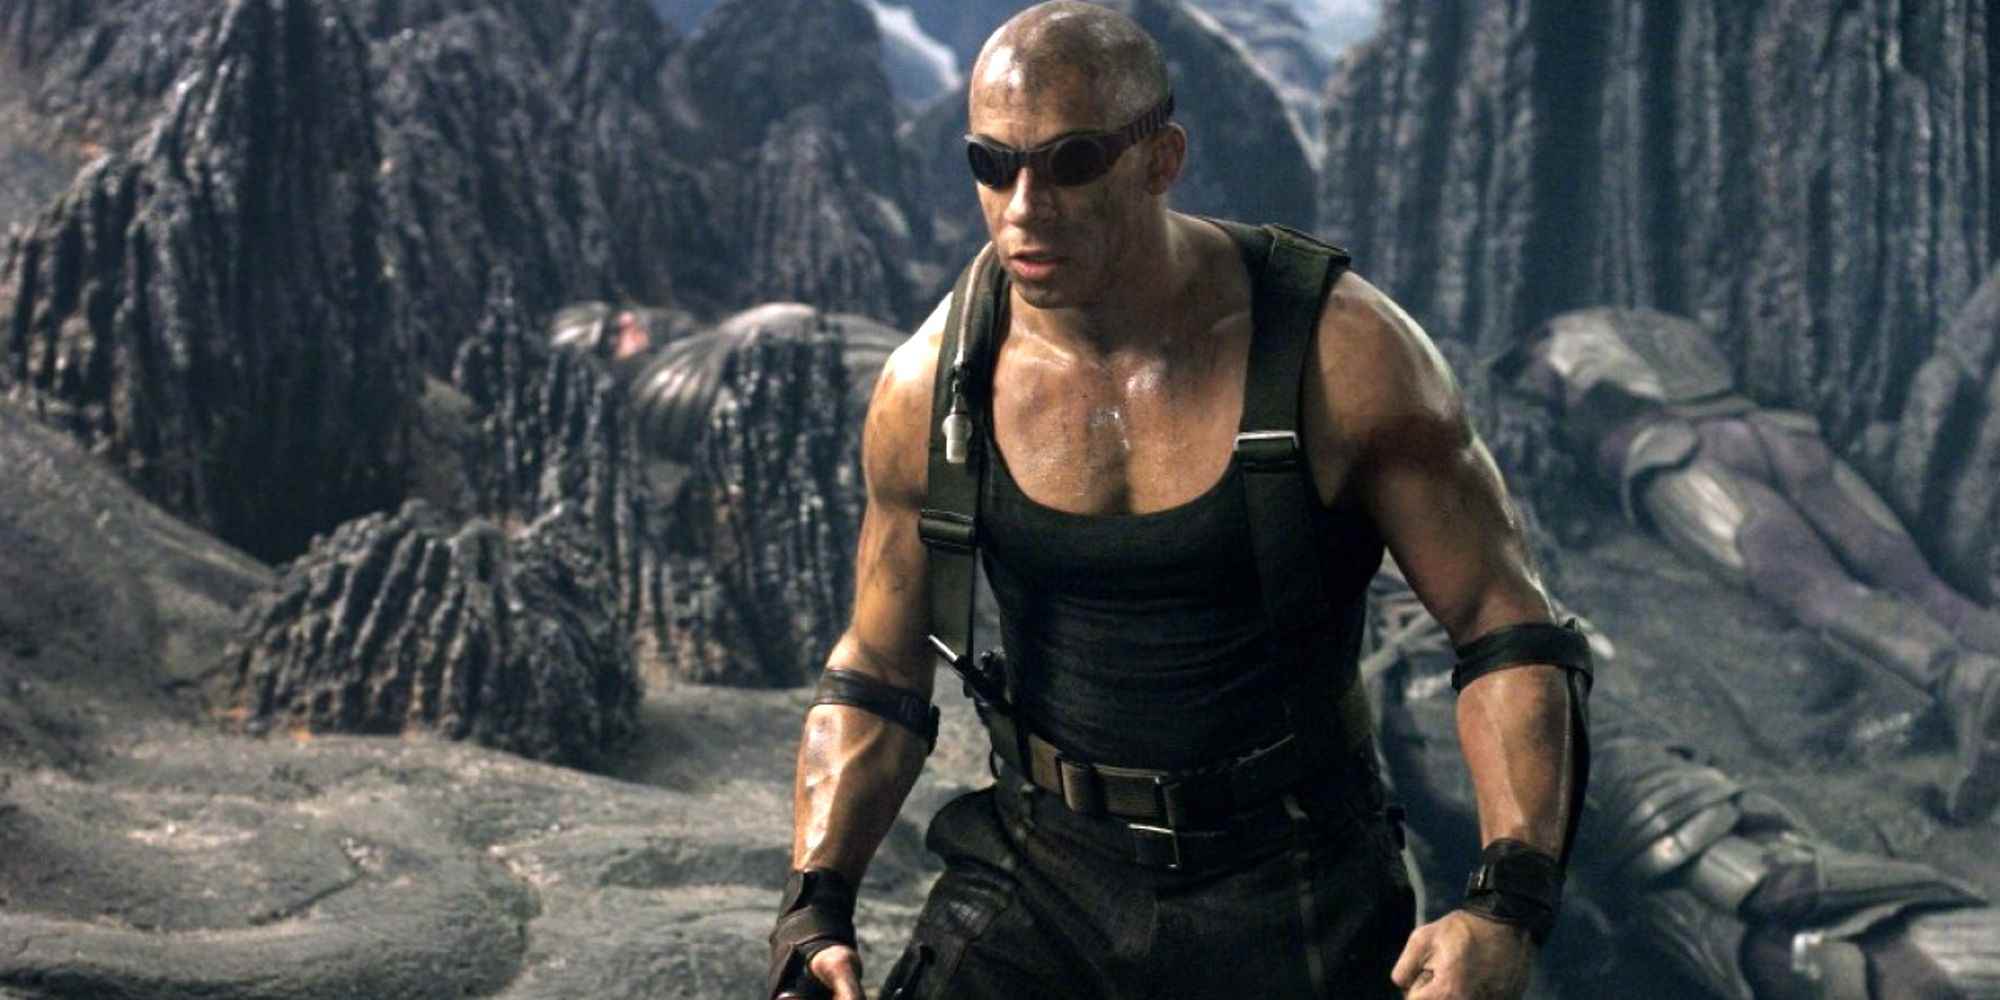 Riddick Chronicles of Riddick'e bakıyor